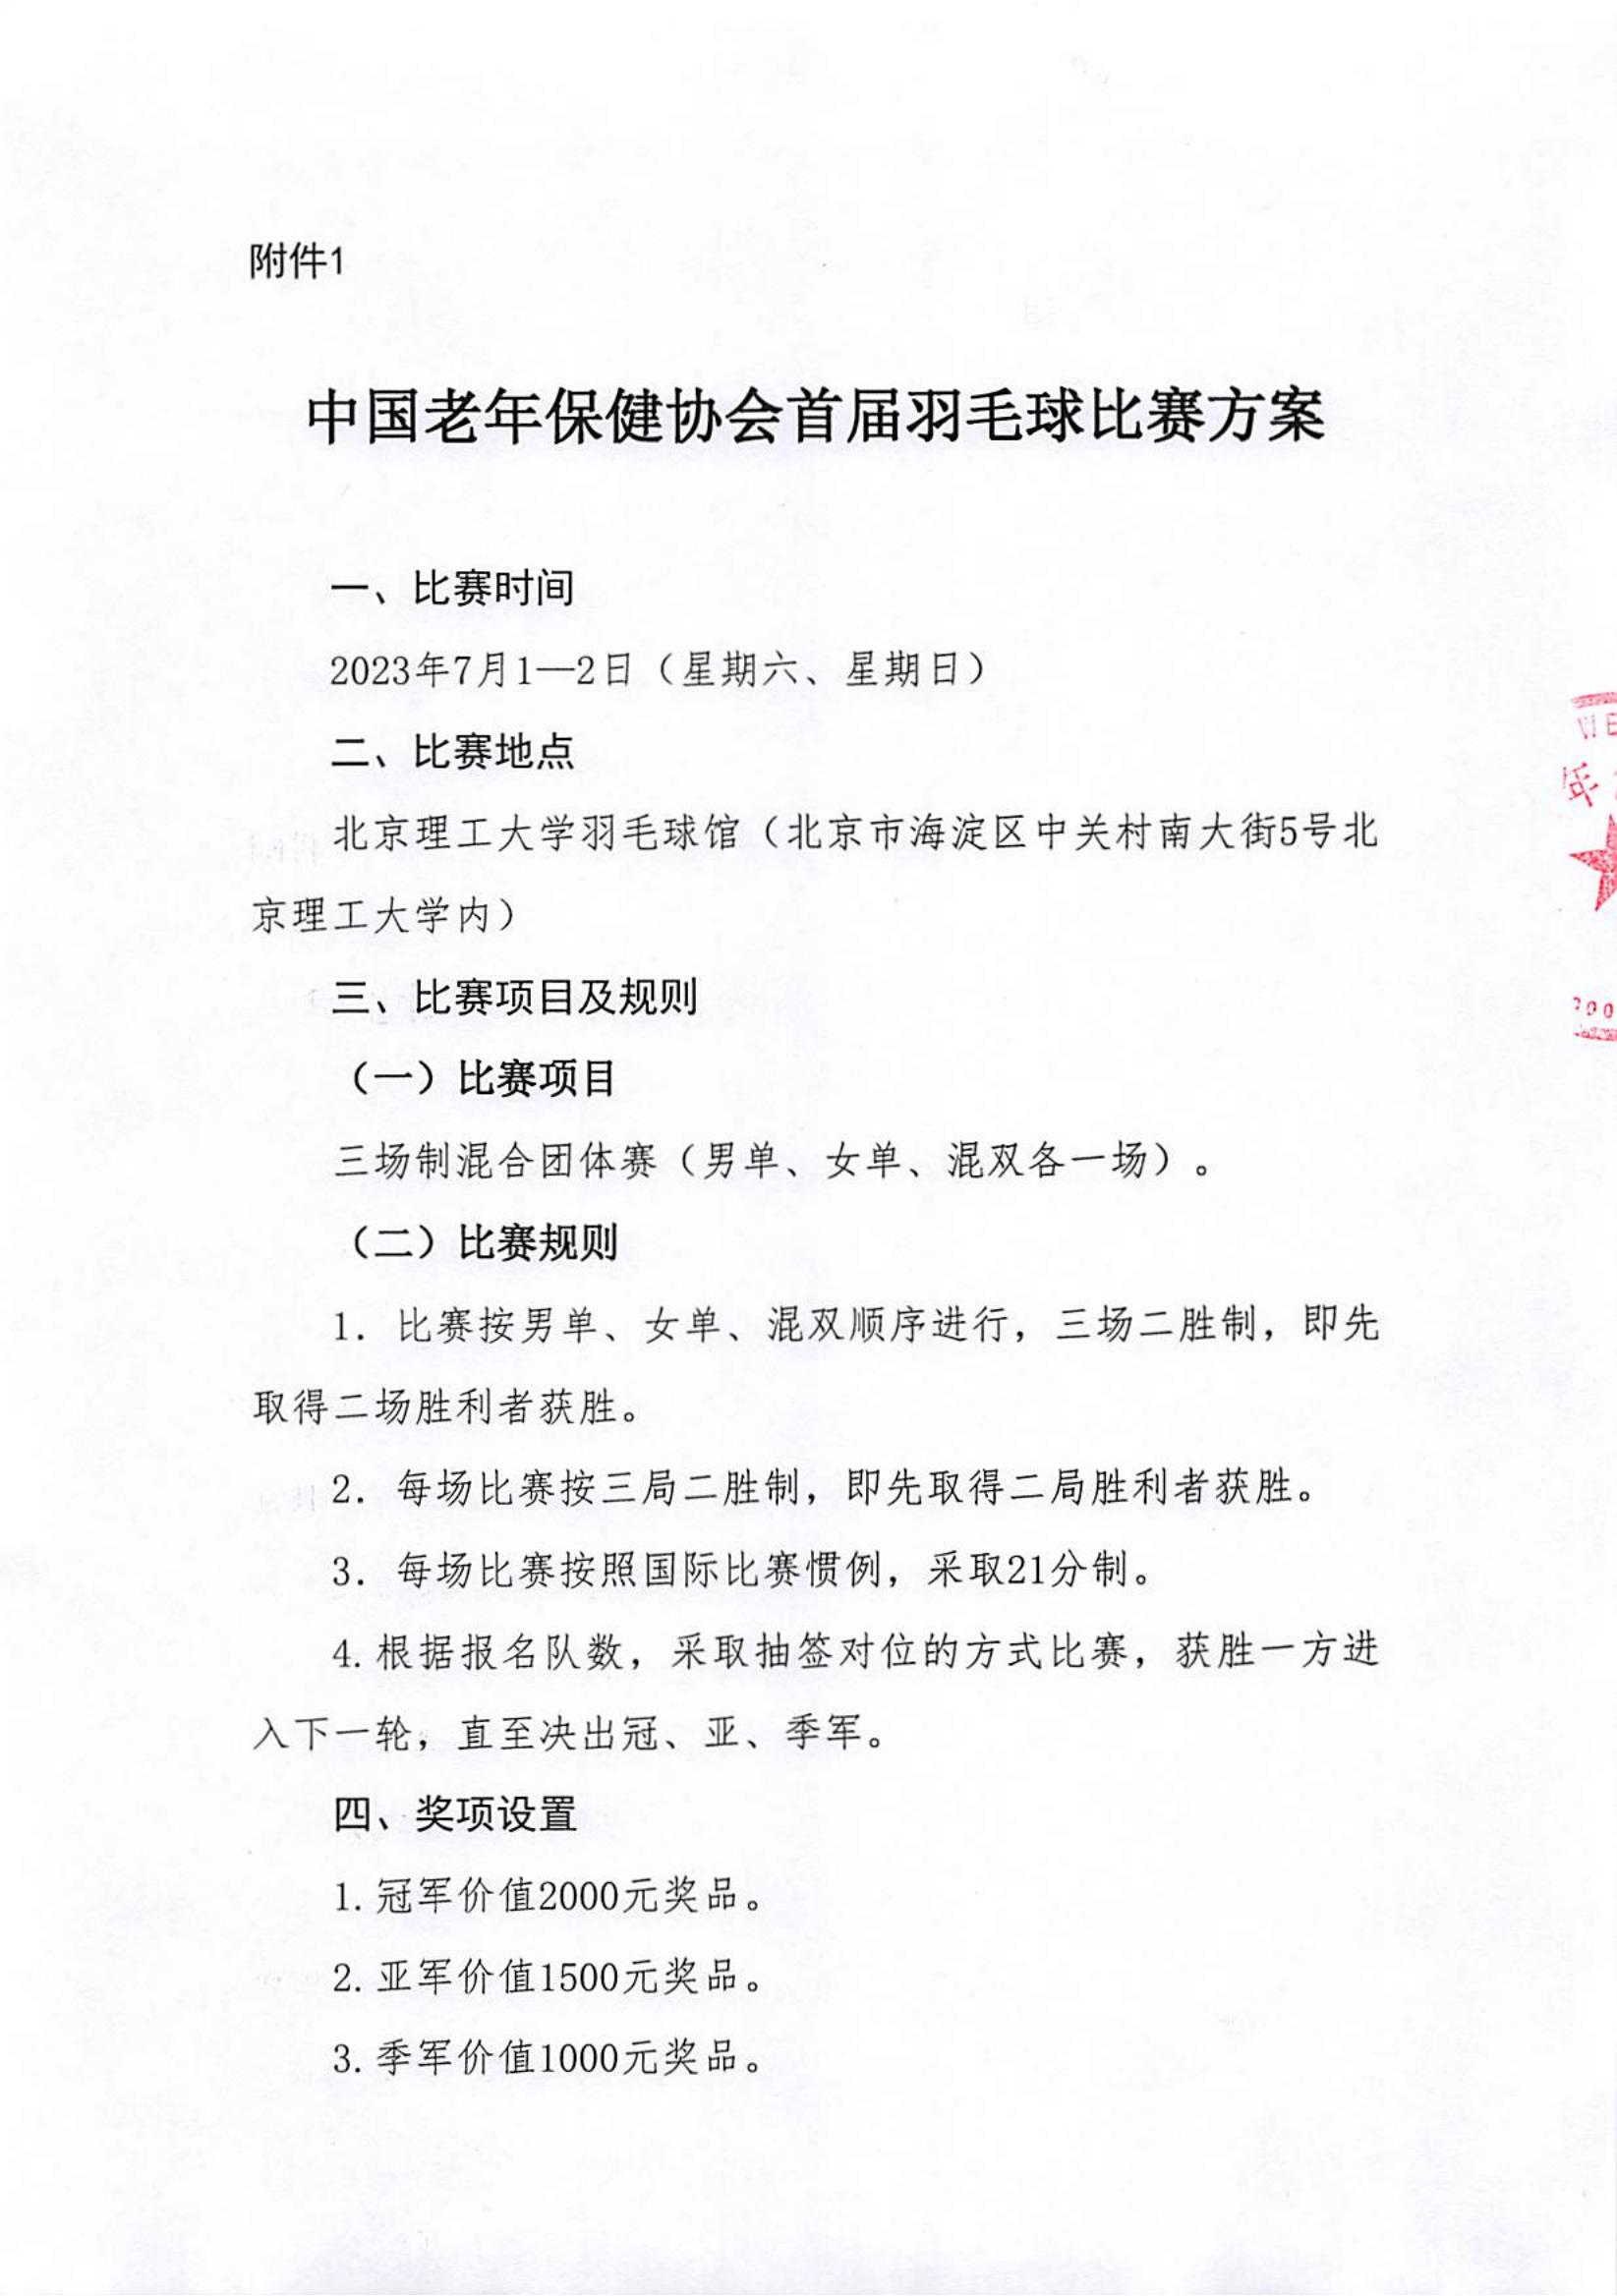 关于组织中国老年保健协会羽毛球比赛活动的通知_01.jpg